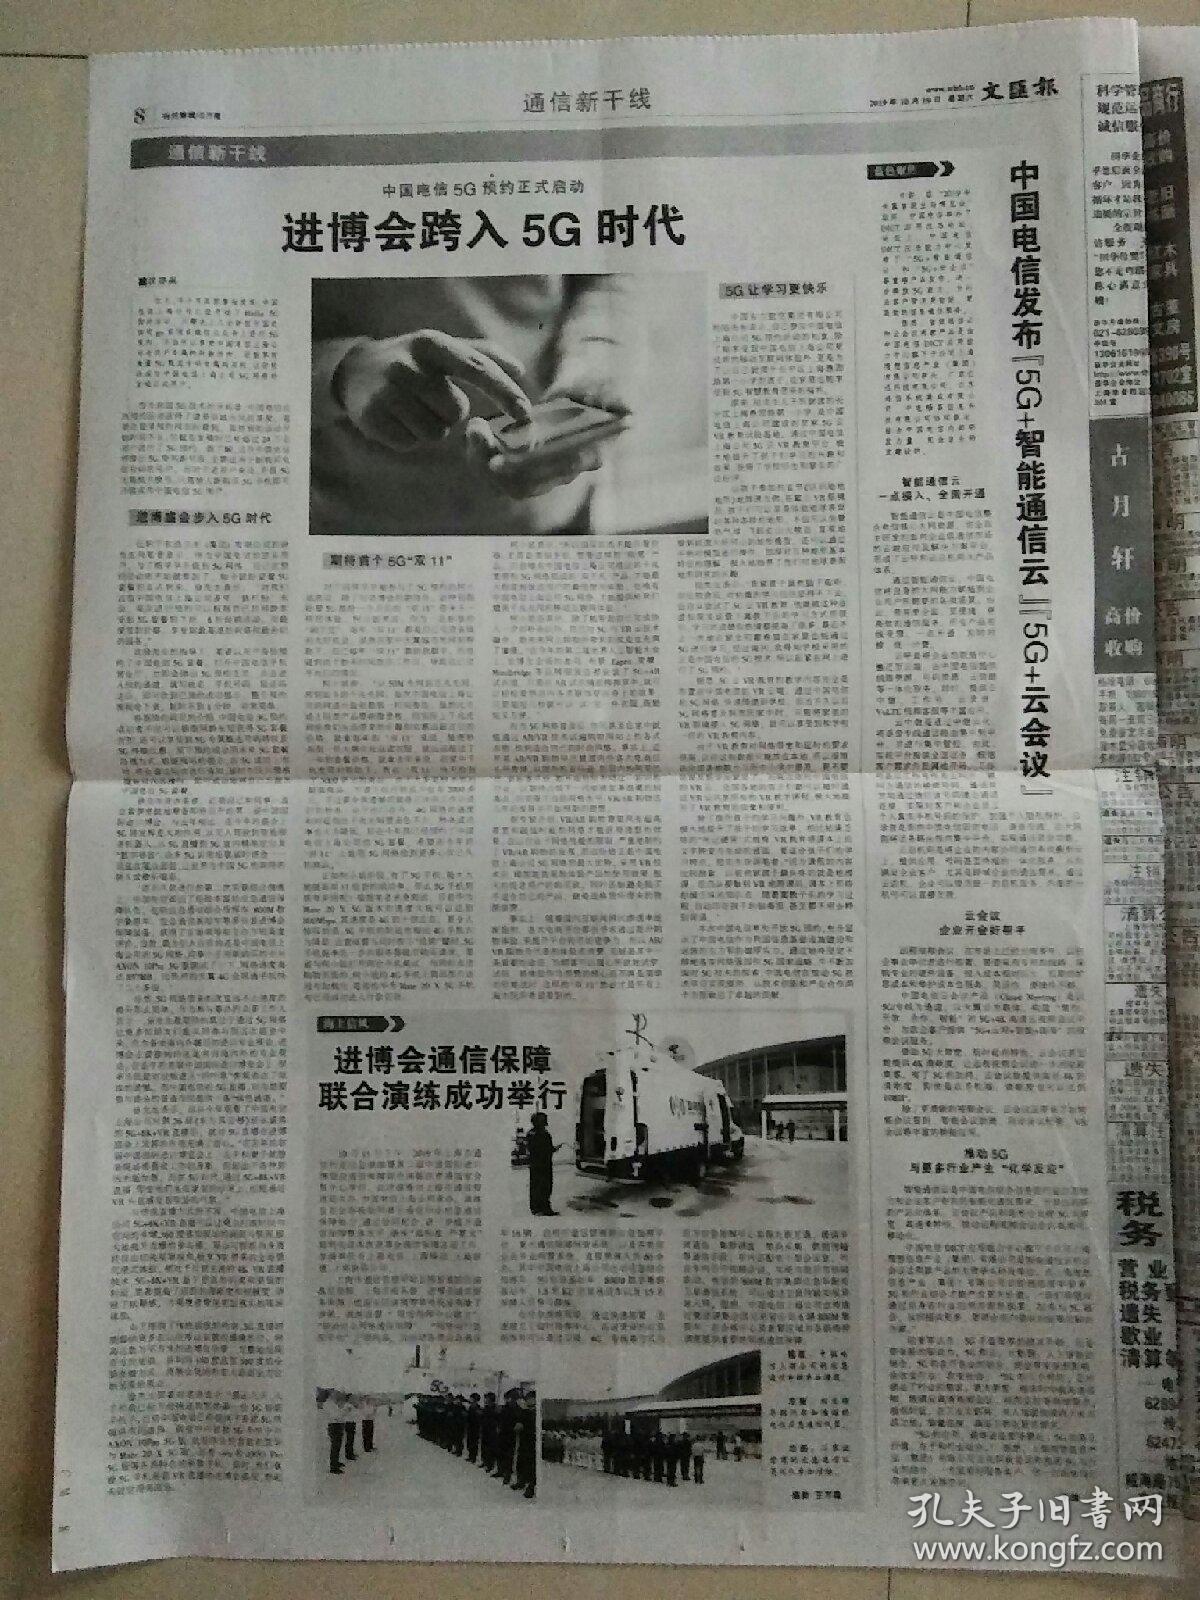 生日报文汇报2019年10月19日（4开八版）
杂技剧《战上海》为中国上海国际艺术节揭目；
进博会跨入5G时代；